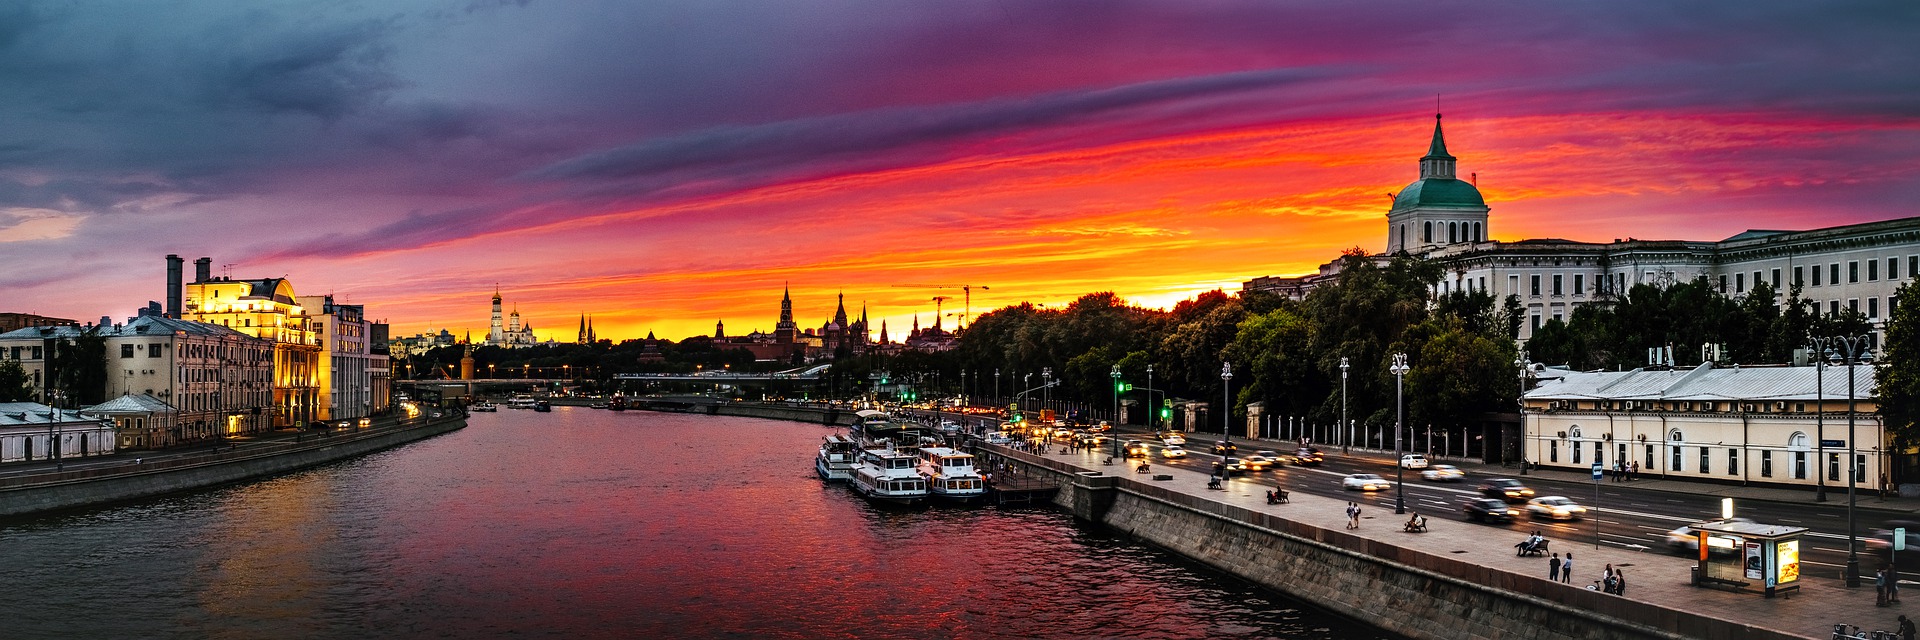 РФ поднялась на 39-е место в мировом рейтинге конкурентоспособности в сфере туризма